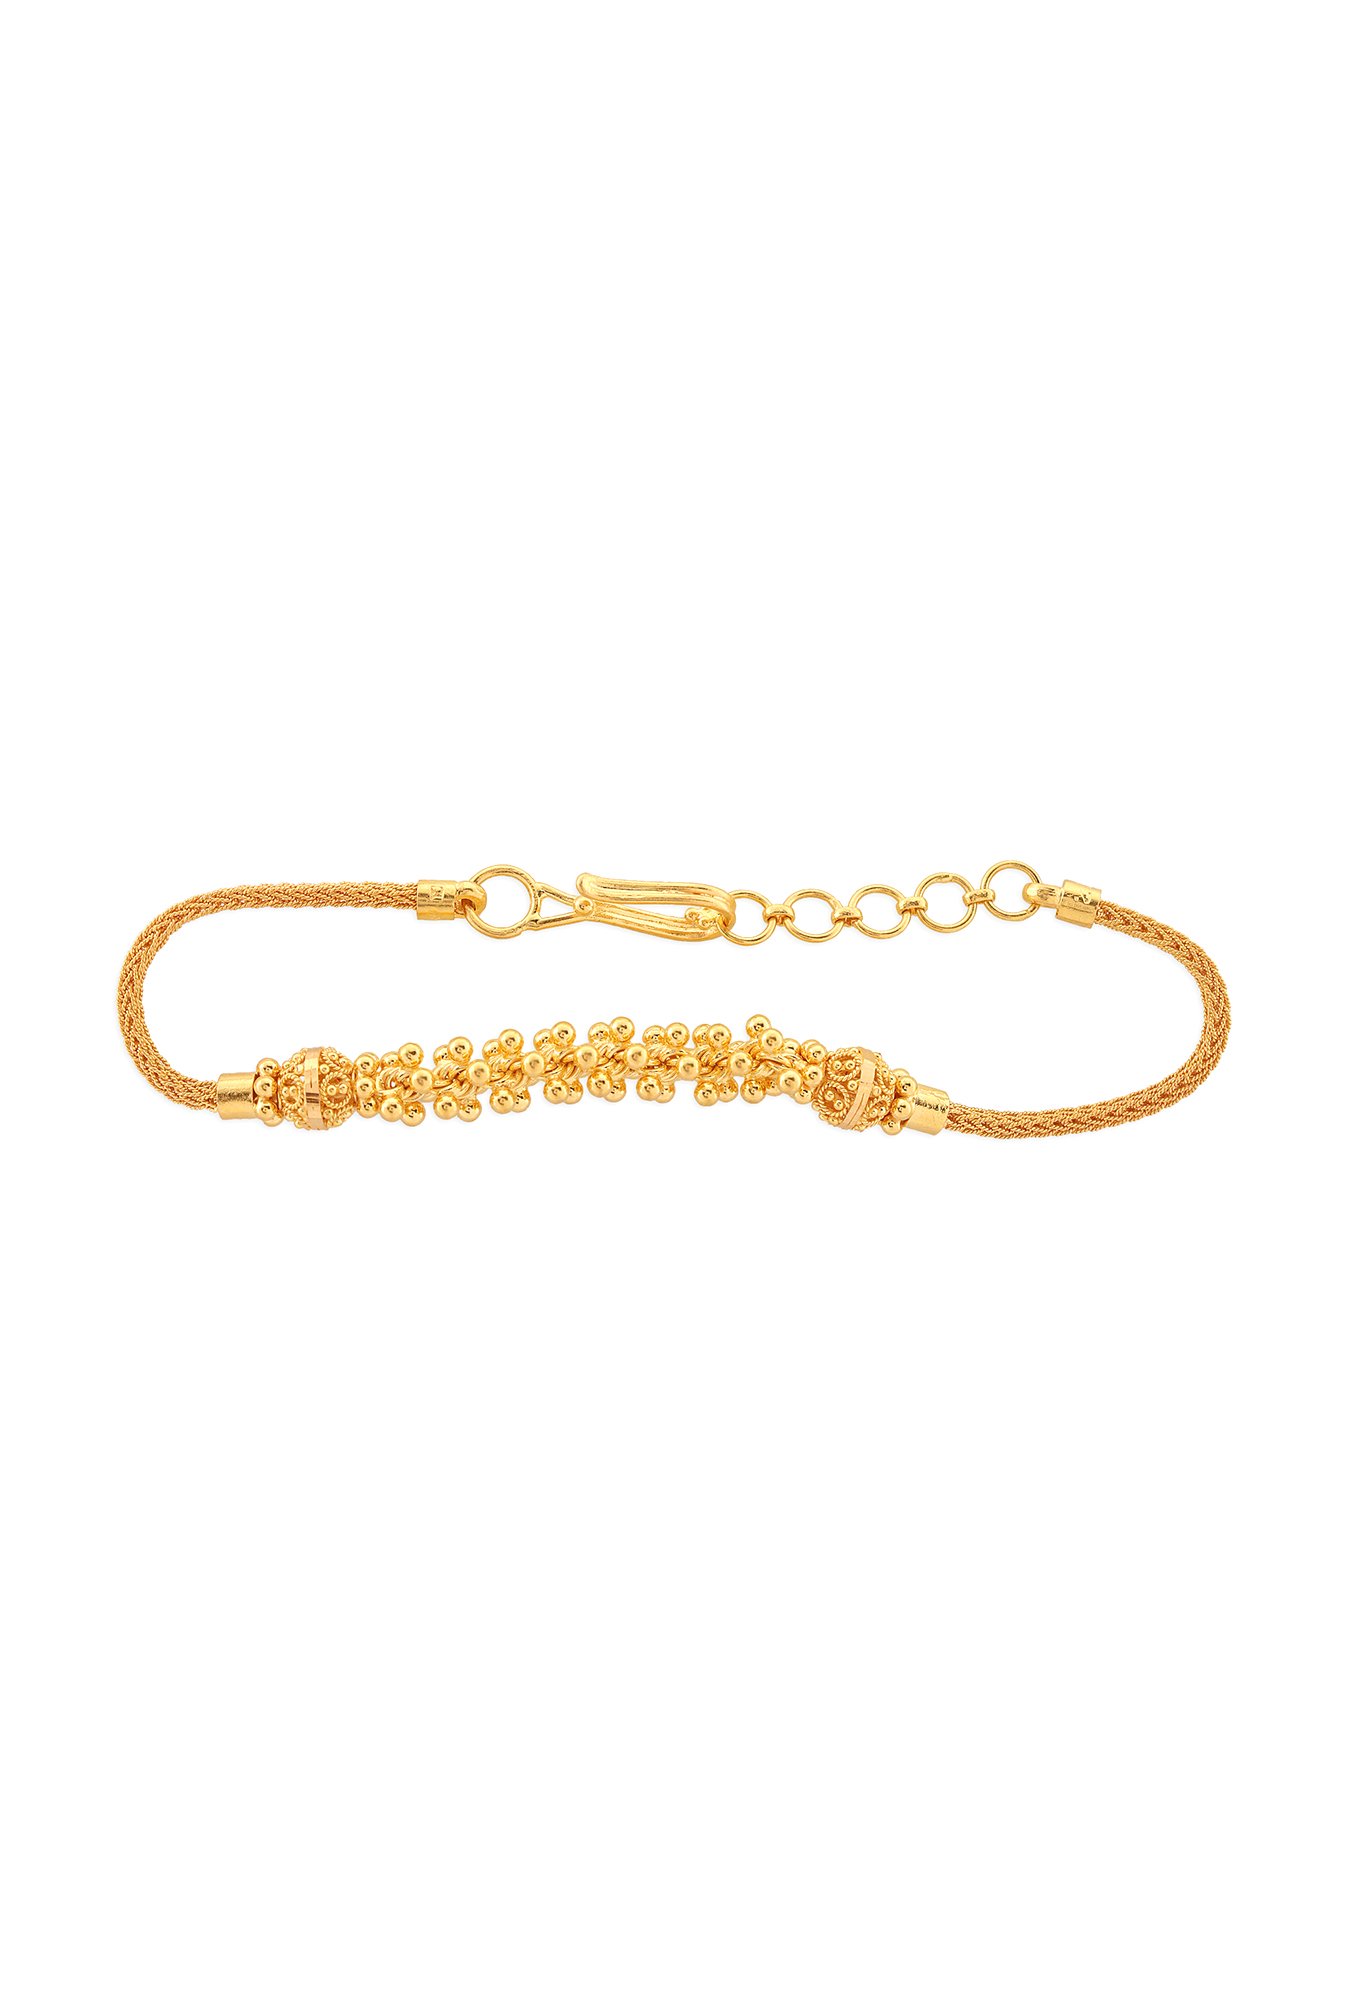 Ice Jade Cabochons 3 Strands 22 Karat Gold Bracelet – Scrives